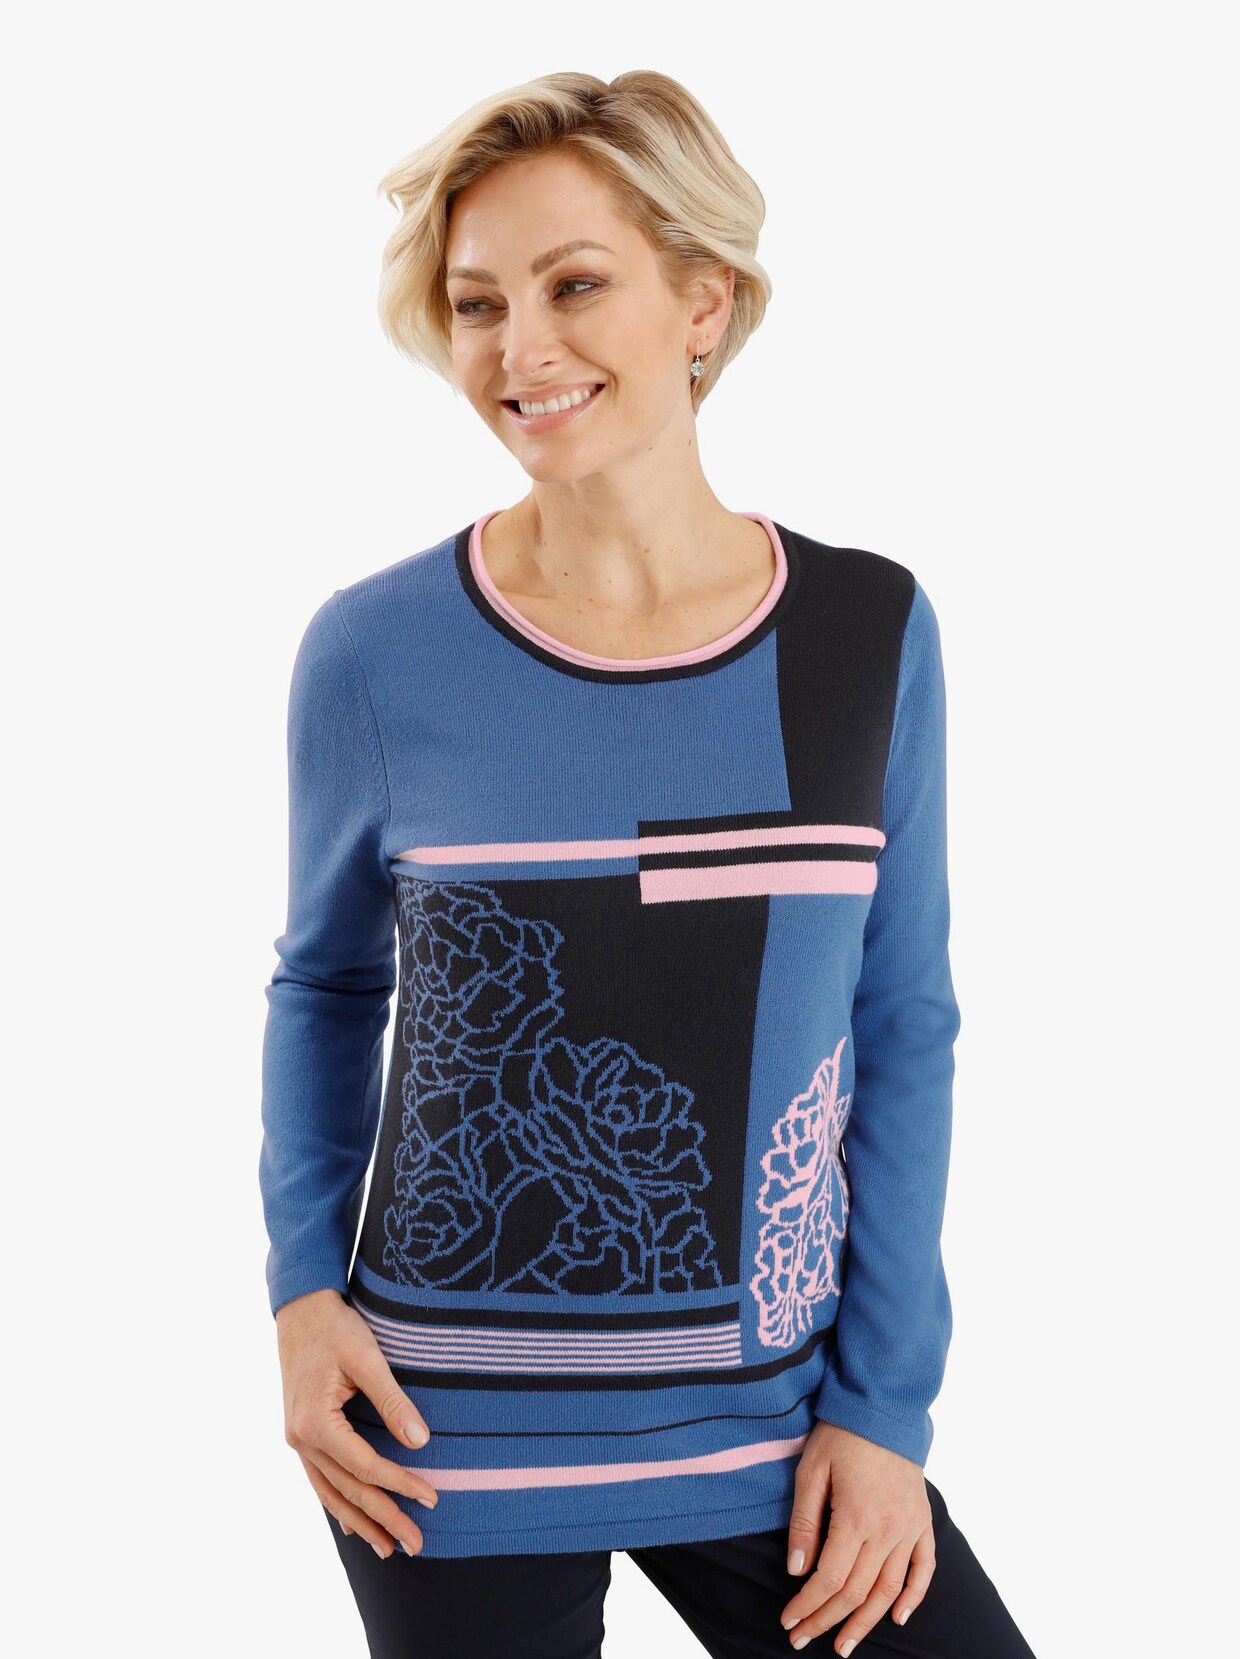 Pullover met lange mouwen - middenblauw gedessineerd